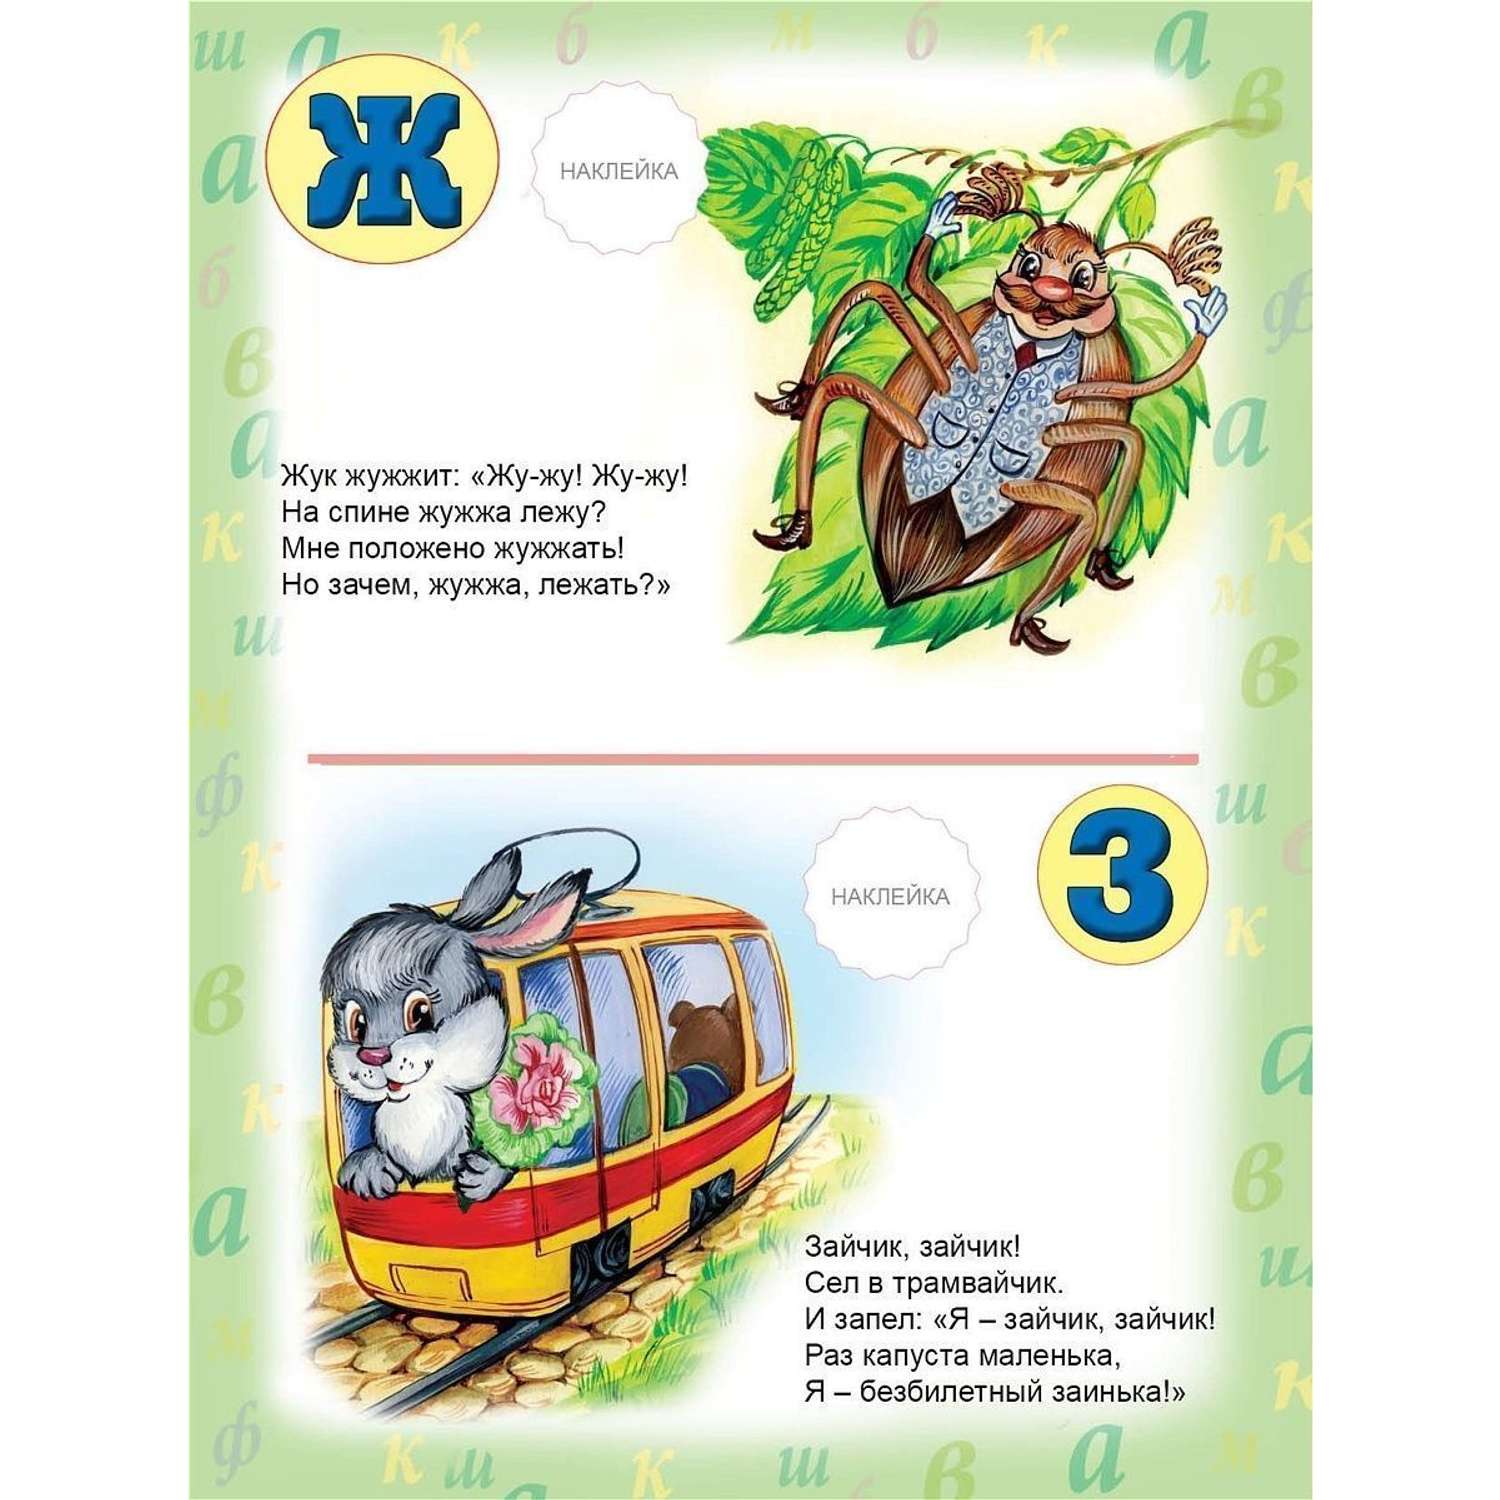 Книга Алтей Азбука для детей с наклейками набор 2 шт. - фото 6